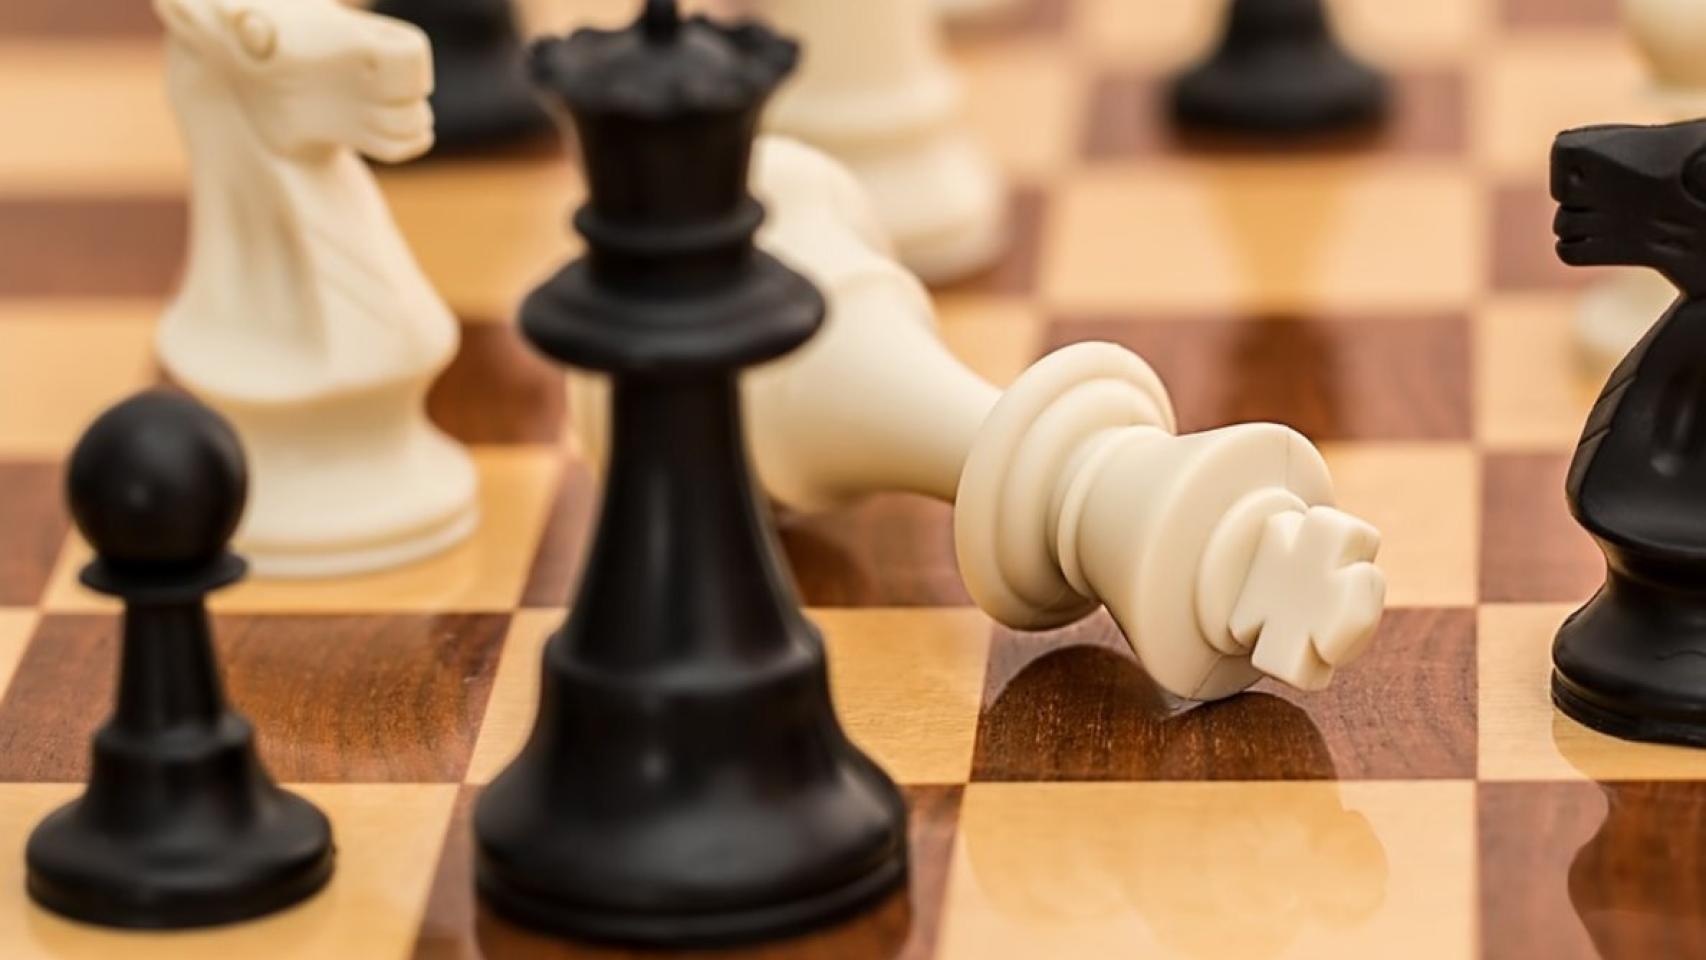 Los mejores juegos online para amantes del ajedrez